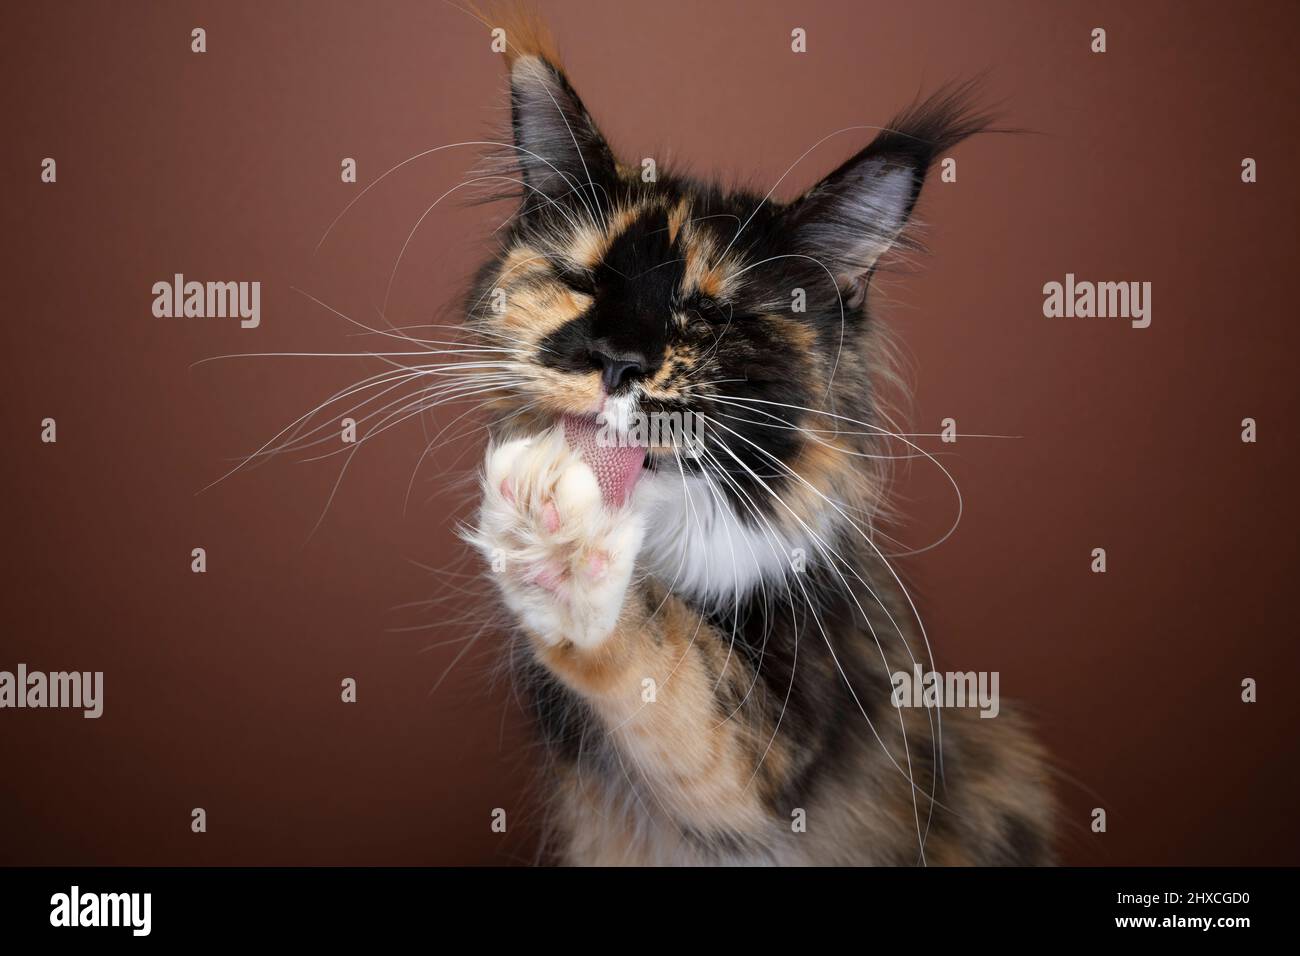 Tortie molletonnée blanc Maine Coon chat avec longs whiskers toilettage fourrure licking paw sur fond brun Banque D'Images